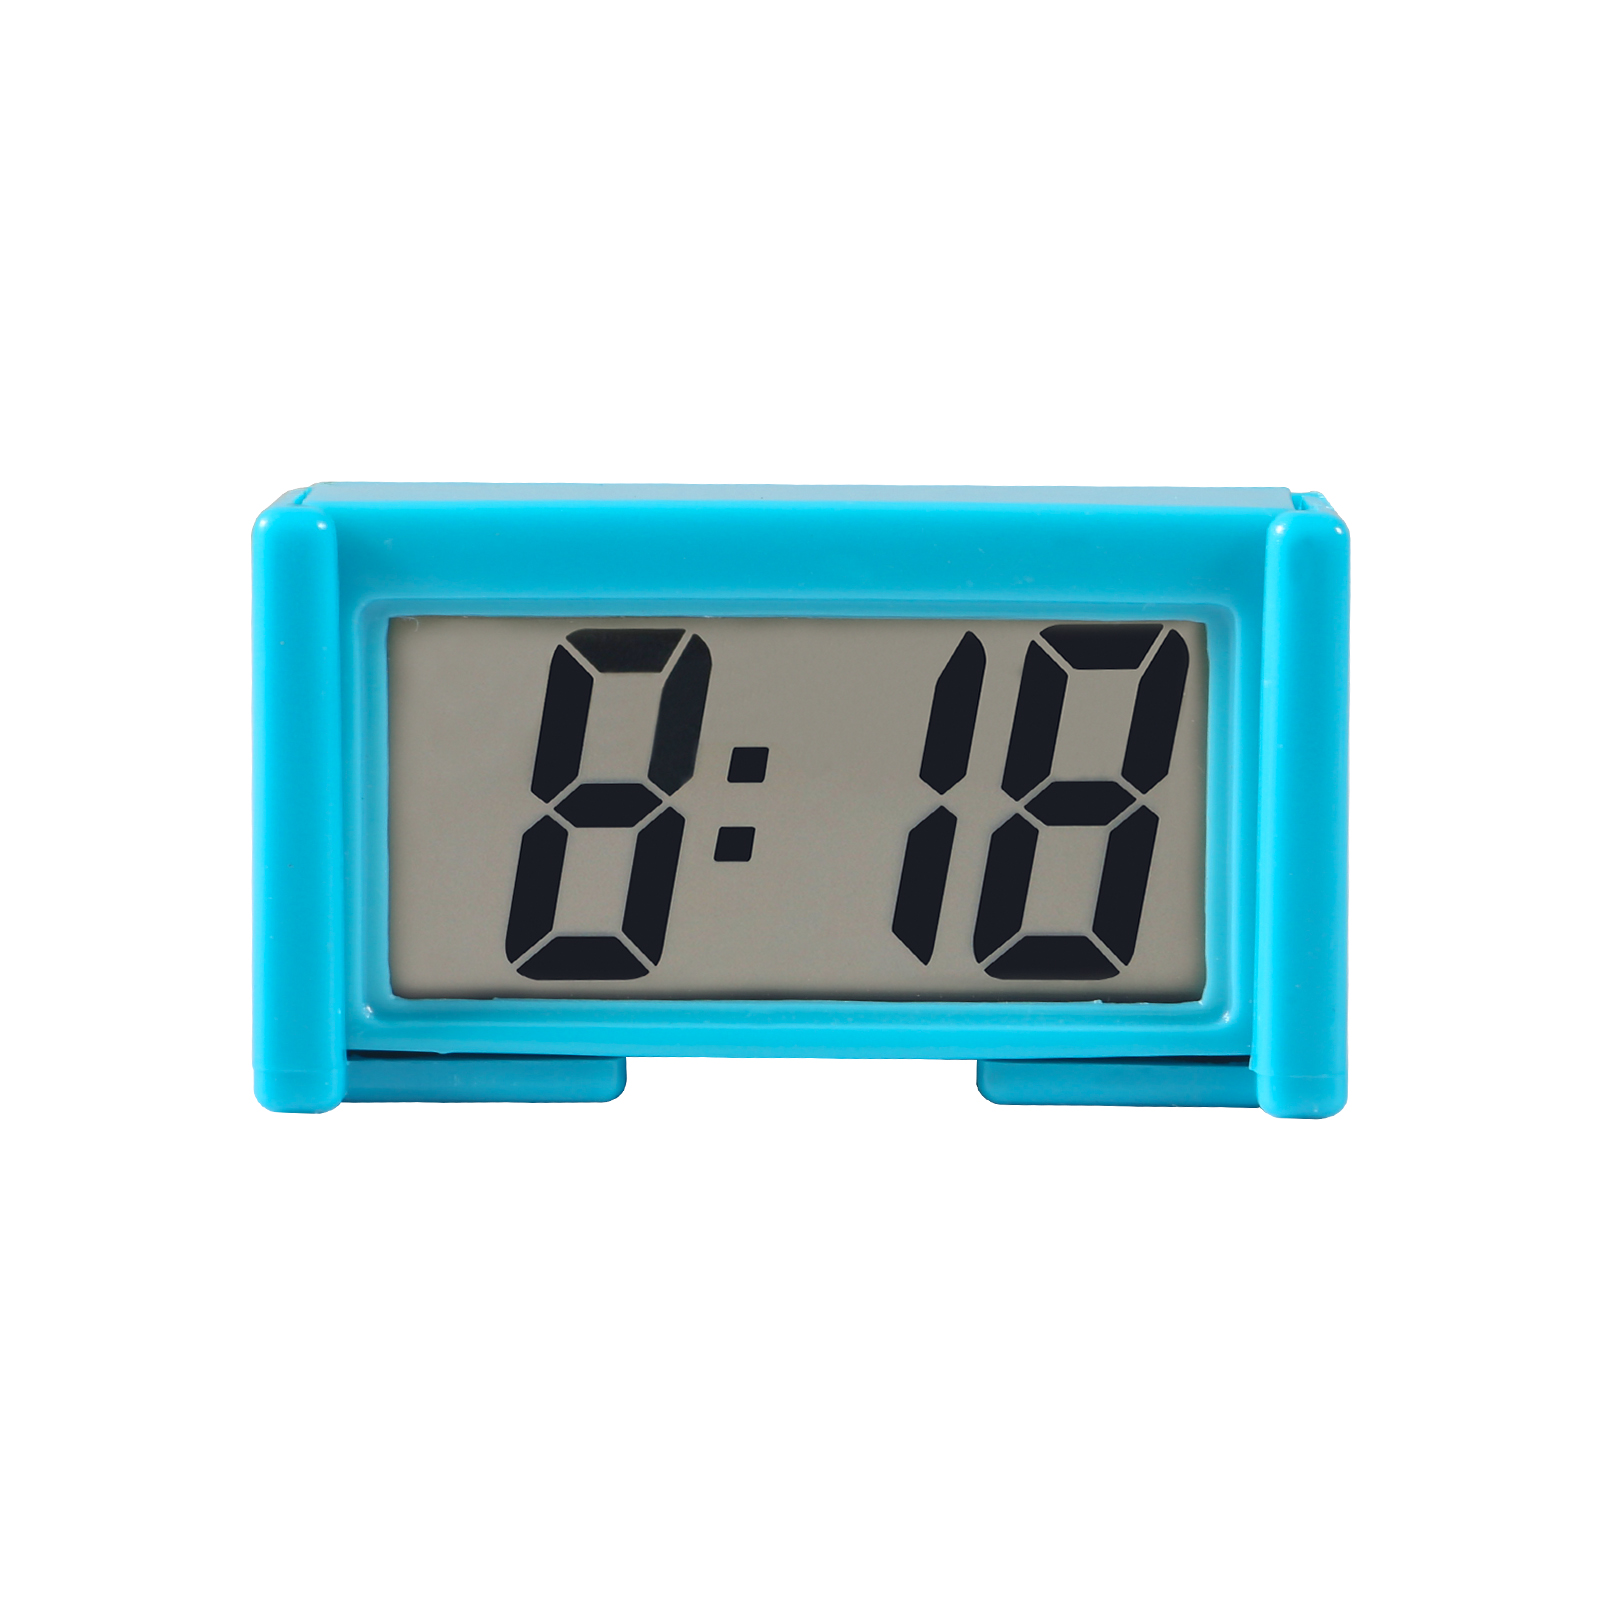 Petit tableau de bord de voiture numérique horloge sur batterie  Fonctionnement par batterie Grand affichage de temps clair Lcd pour  automobile, moto et camion